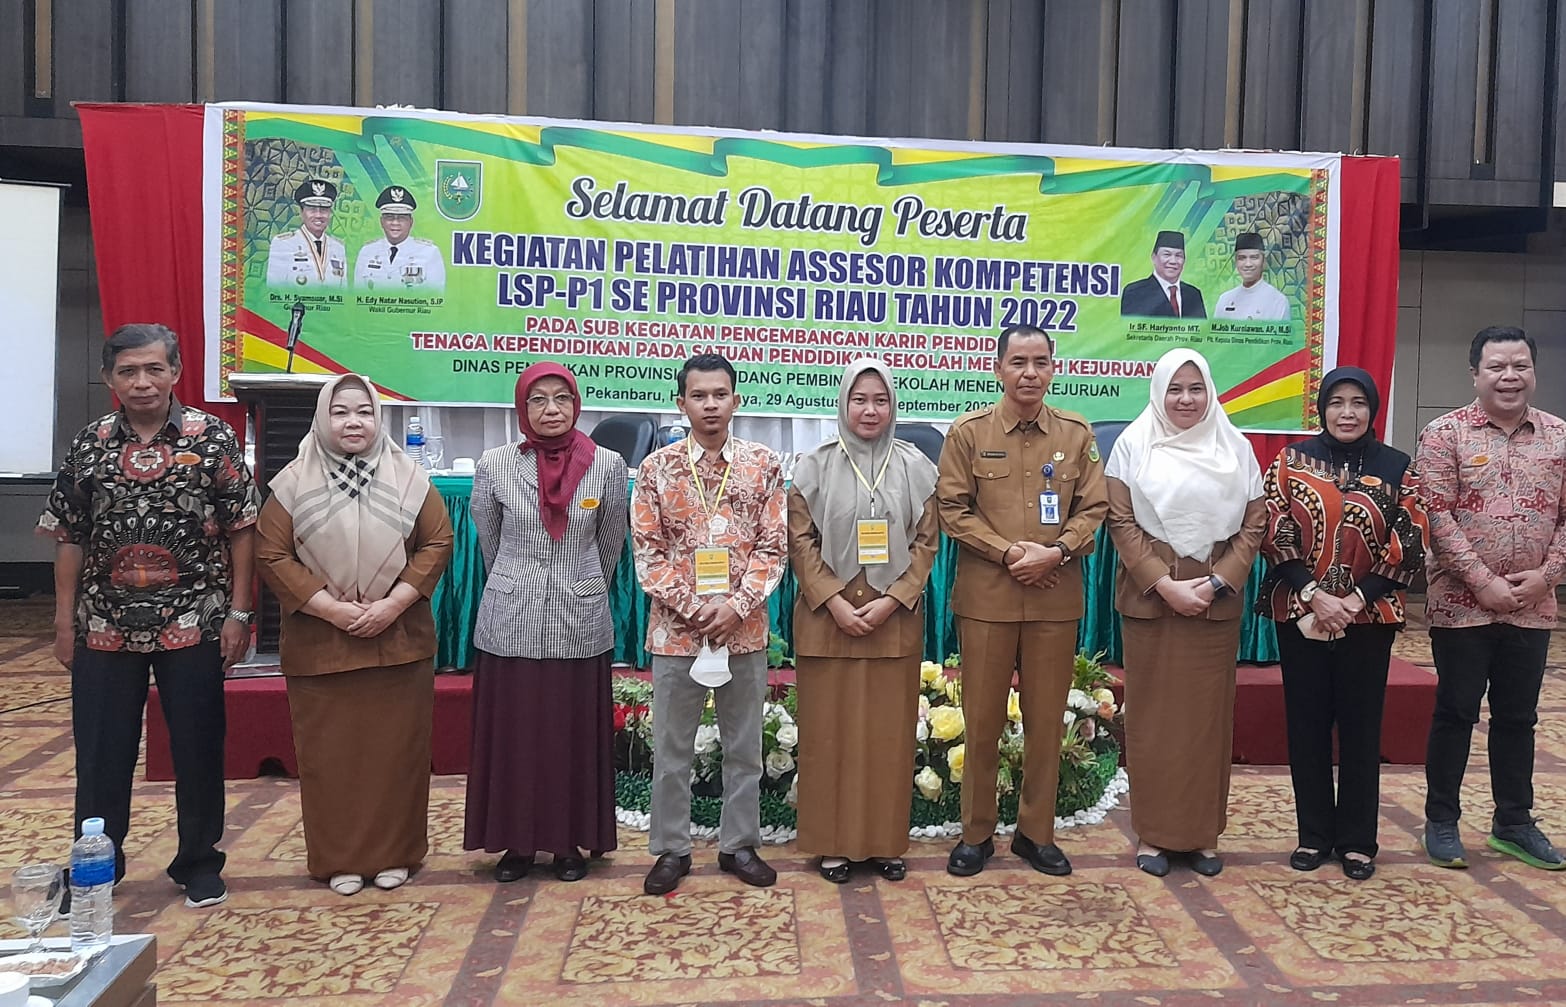 Disdik Riau Gelar Diklat Asesor LSP-P1, Kabid SMK: Jumlah Asesor Masih Minim dan Belum Merata